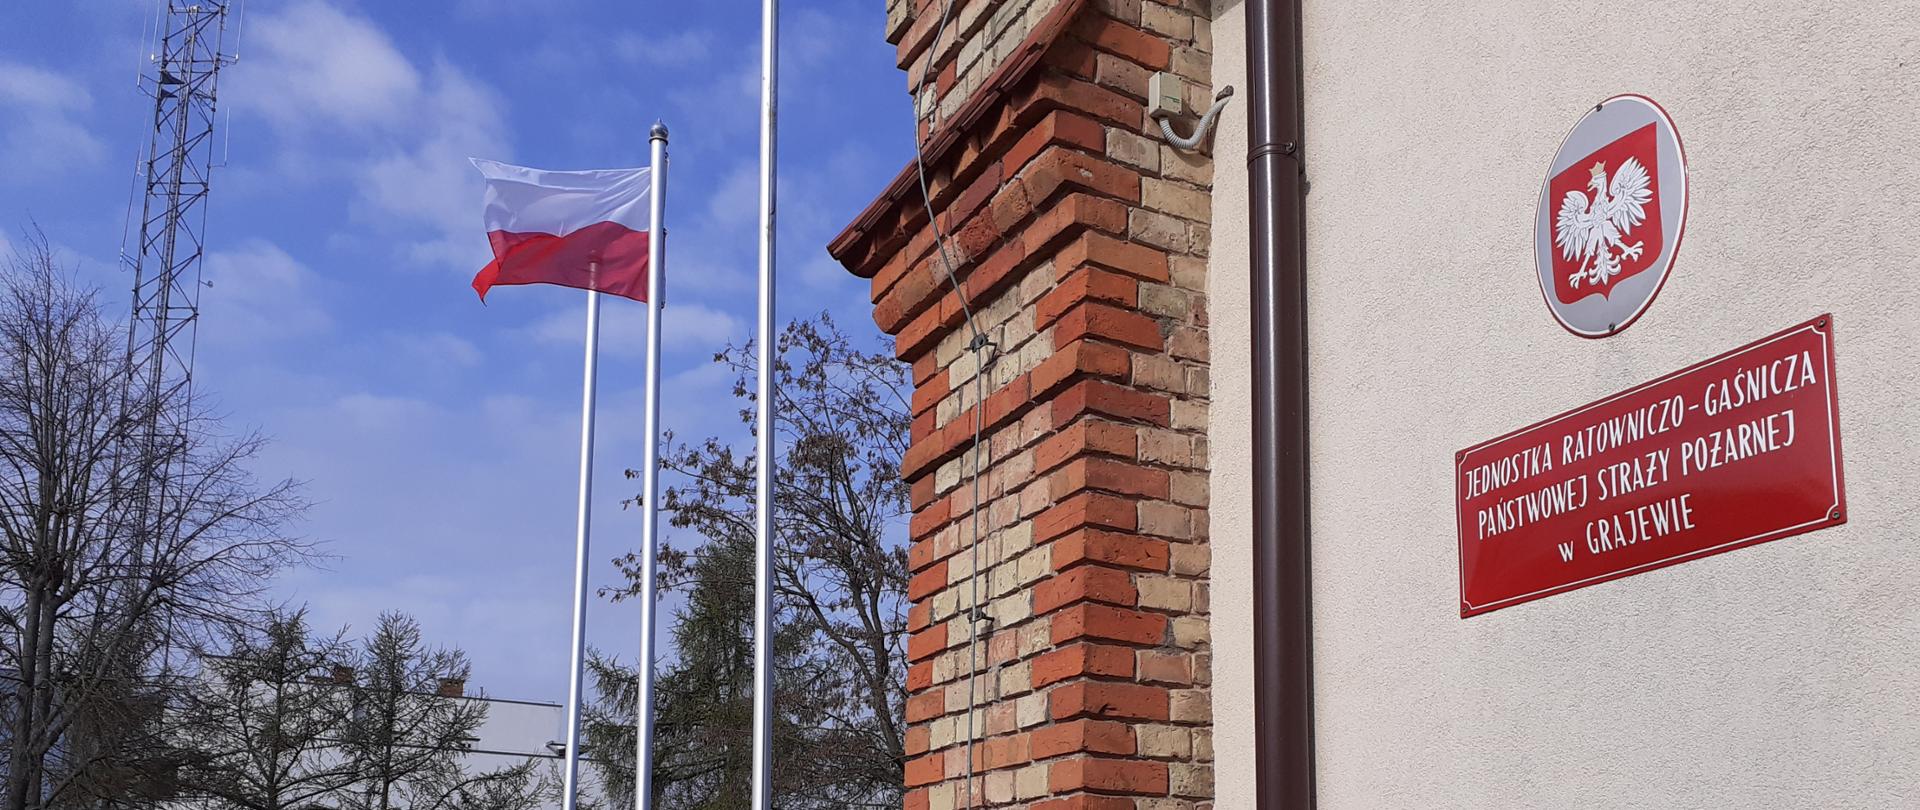 Polska flaga powiewa na maszcie/ pod masztem stoi poczet flagowy. Z prawej ściana budynku a na niej godło i tabliczka informacyjna.